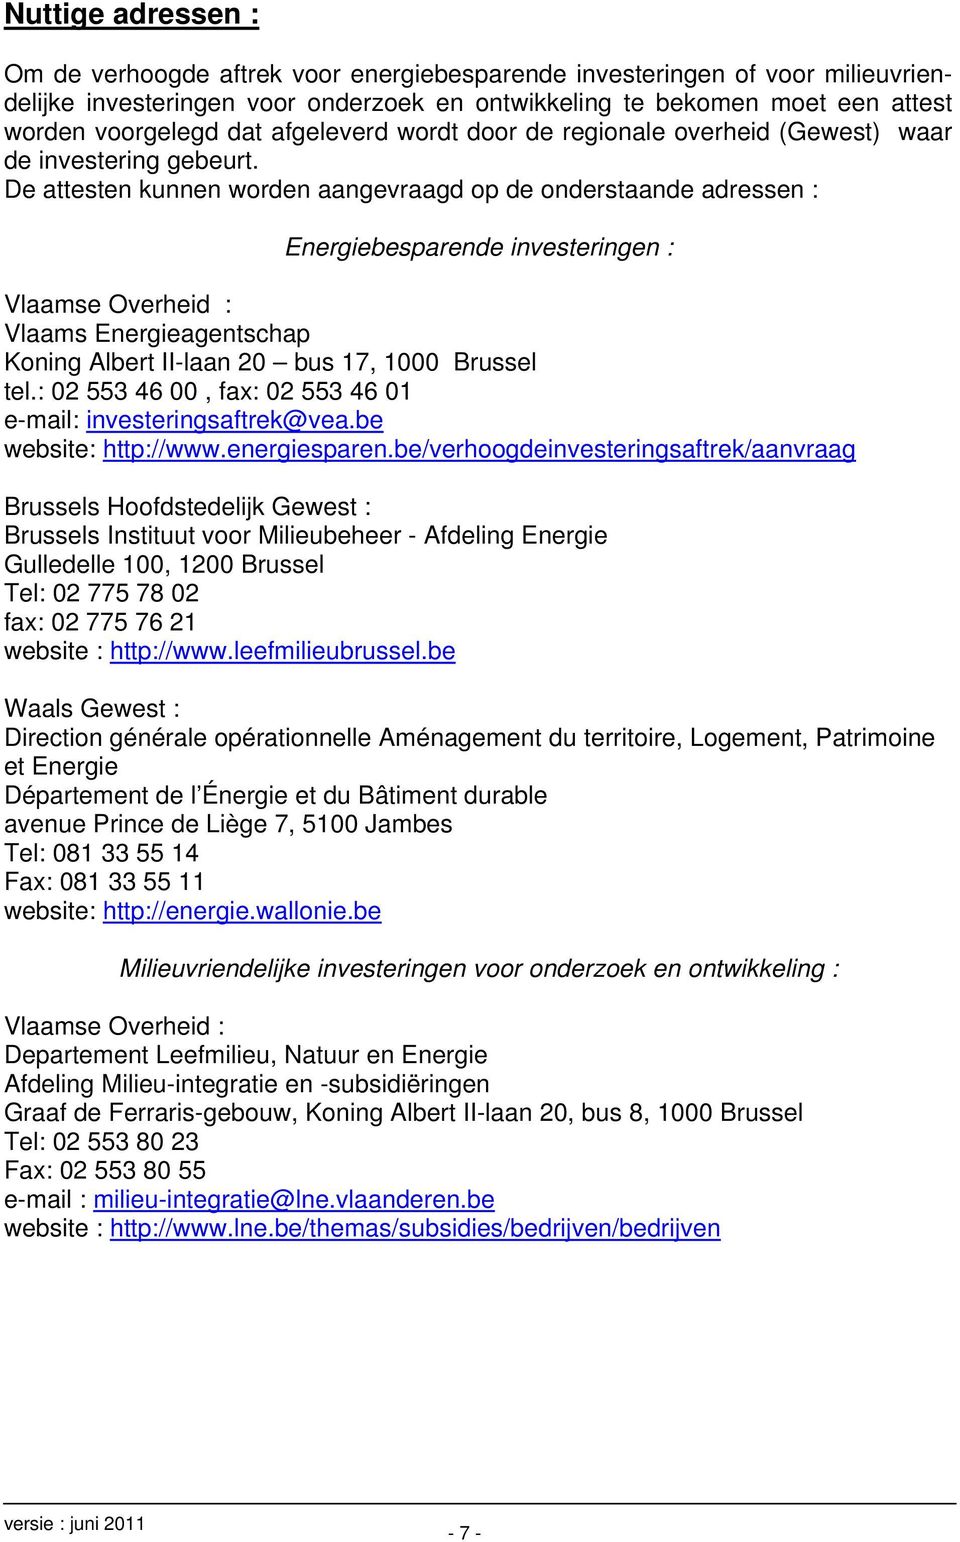 De attesten kunnen worden aangevraagd op de onderstaande adressen : Energiebesparende investeringen : Vlaamse Overheid : Vlaams Energieagentschap Koning Albert II-laan 20 bus 17, 1000 Brussel tel.